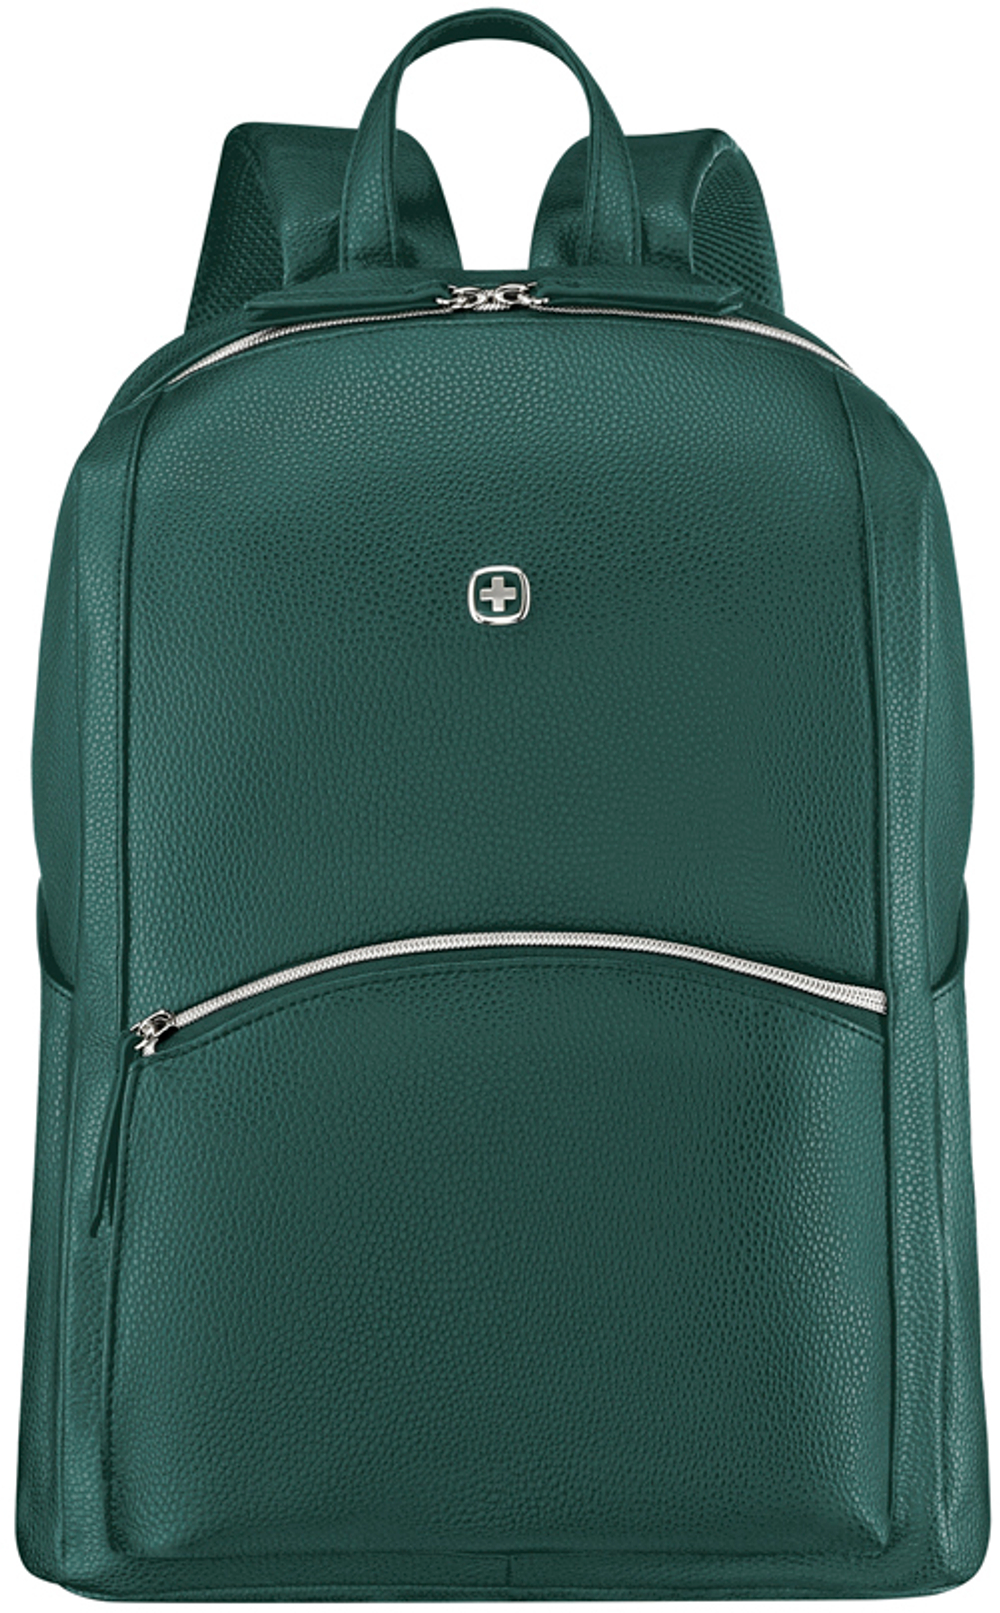 Женский городской рюкзак зелёный (18л) LeaMarie WENGER 611223